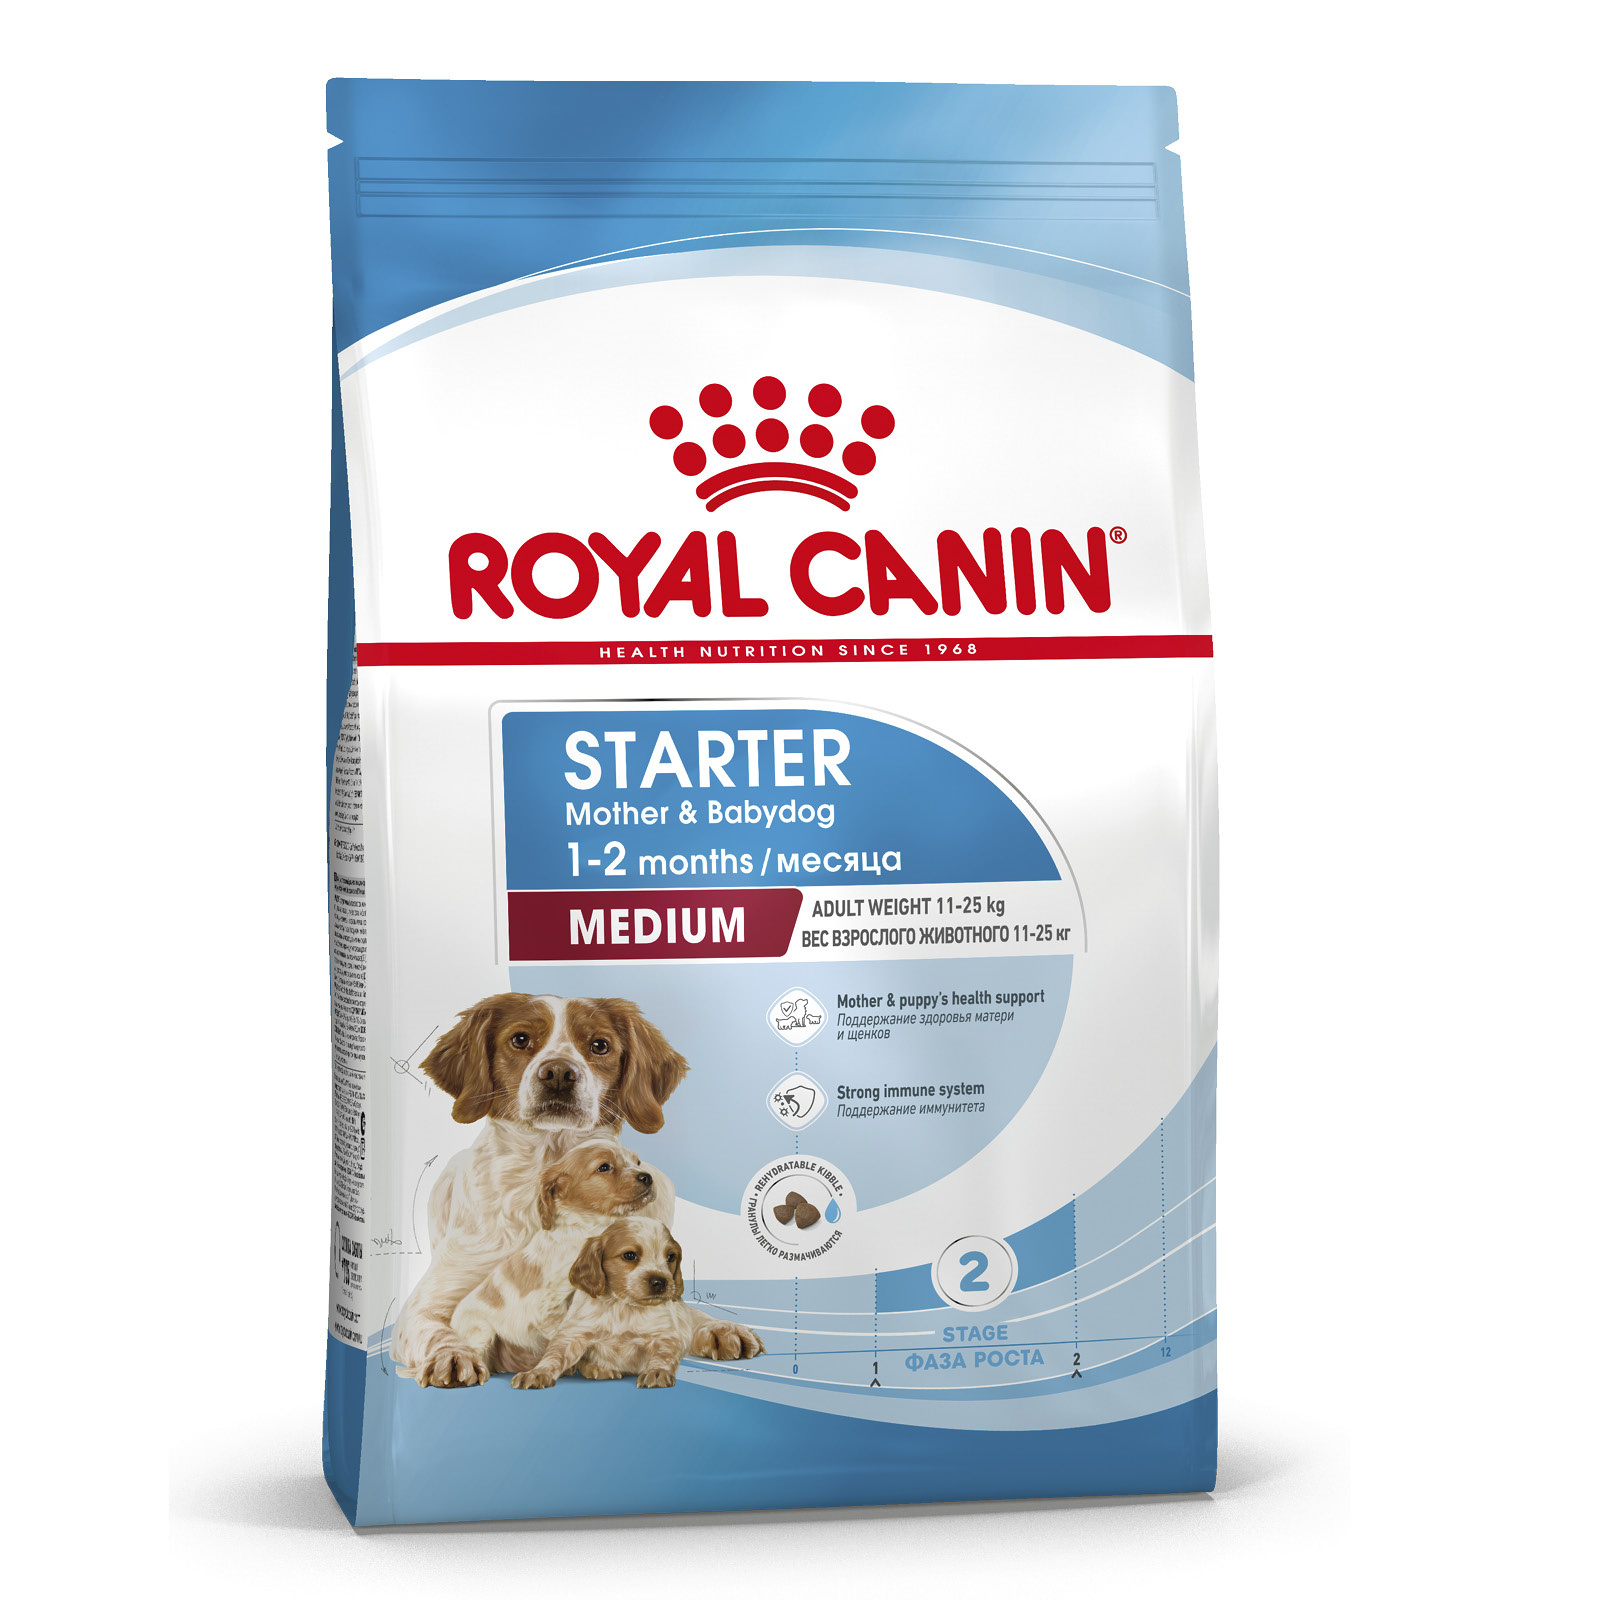 Royal Canin Корм Royal Canin для щенков средних пород от 3 недель до 2 месяцев, беременных и кормящих сук (4 кг) royal canin корм royal canin для щенков крупных пород от 3 недель до 2 месяцев беременных и кормящих сук 4 кг